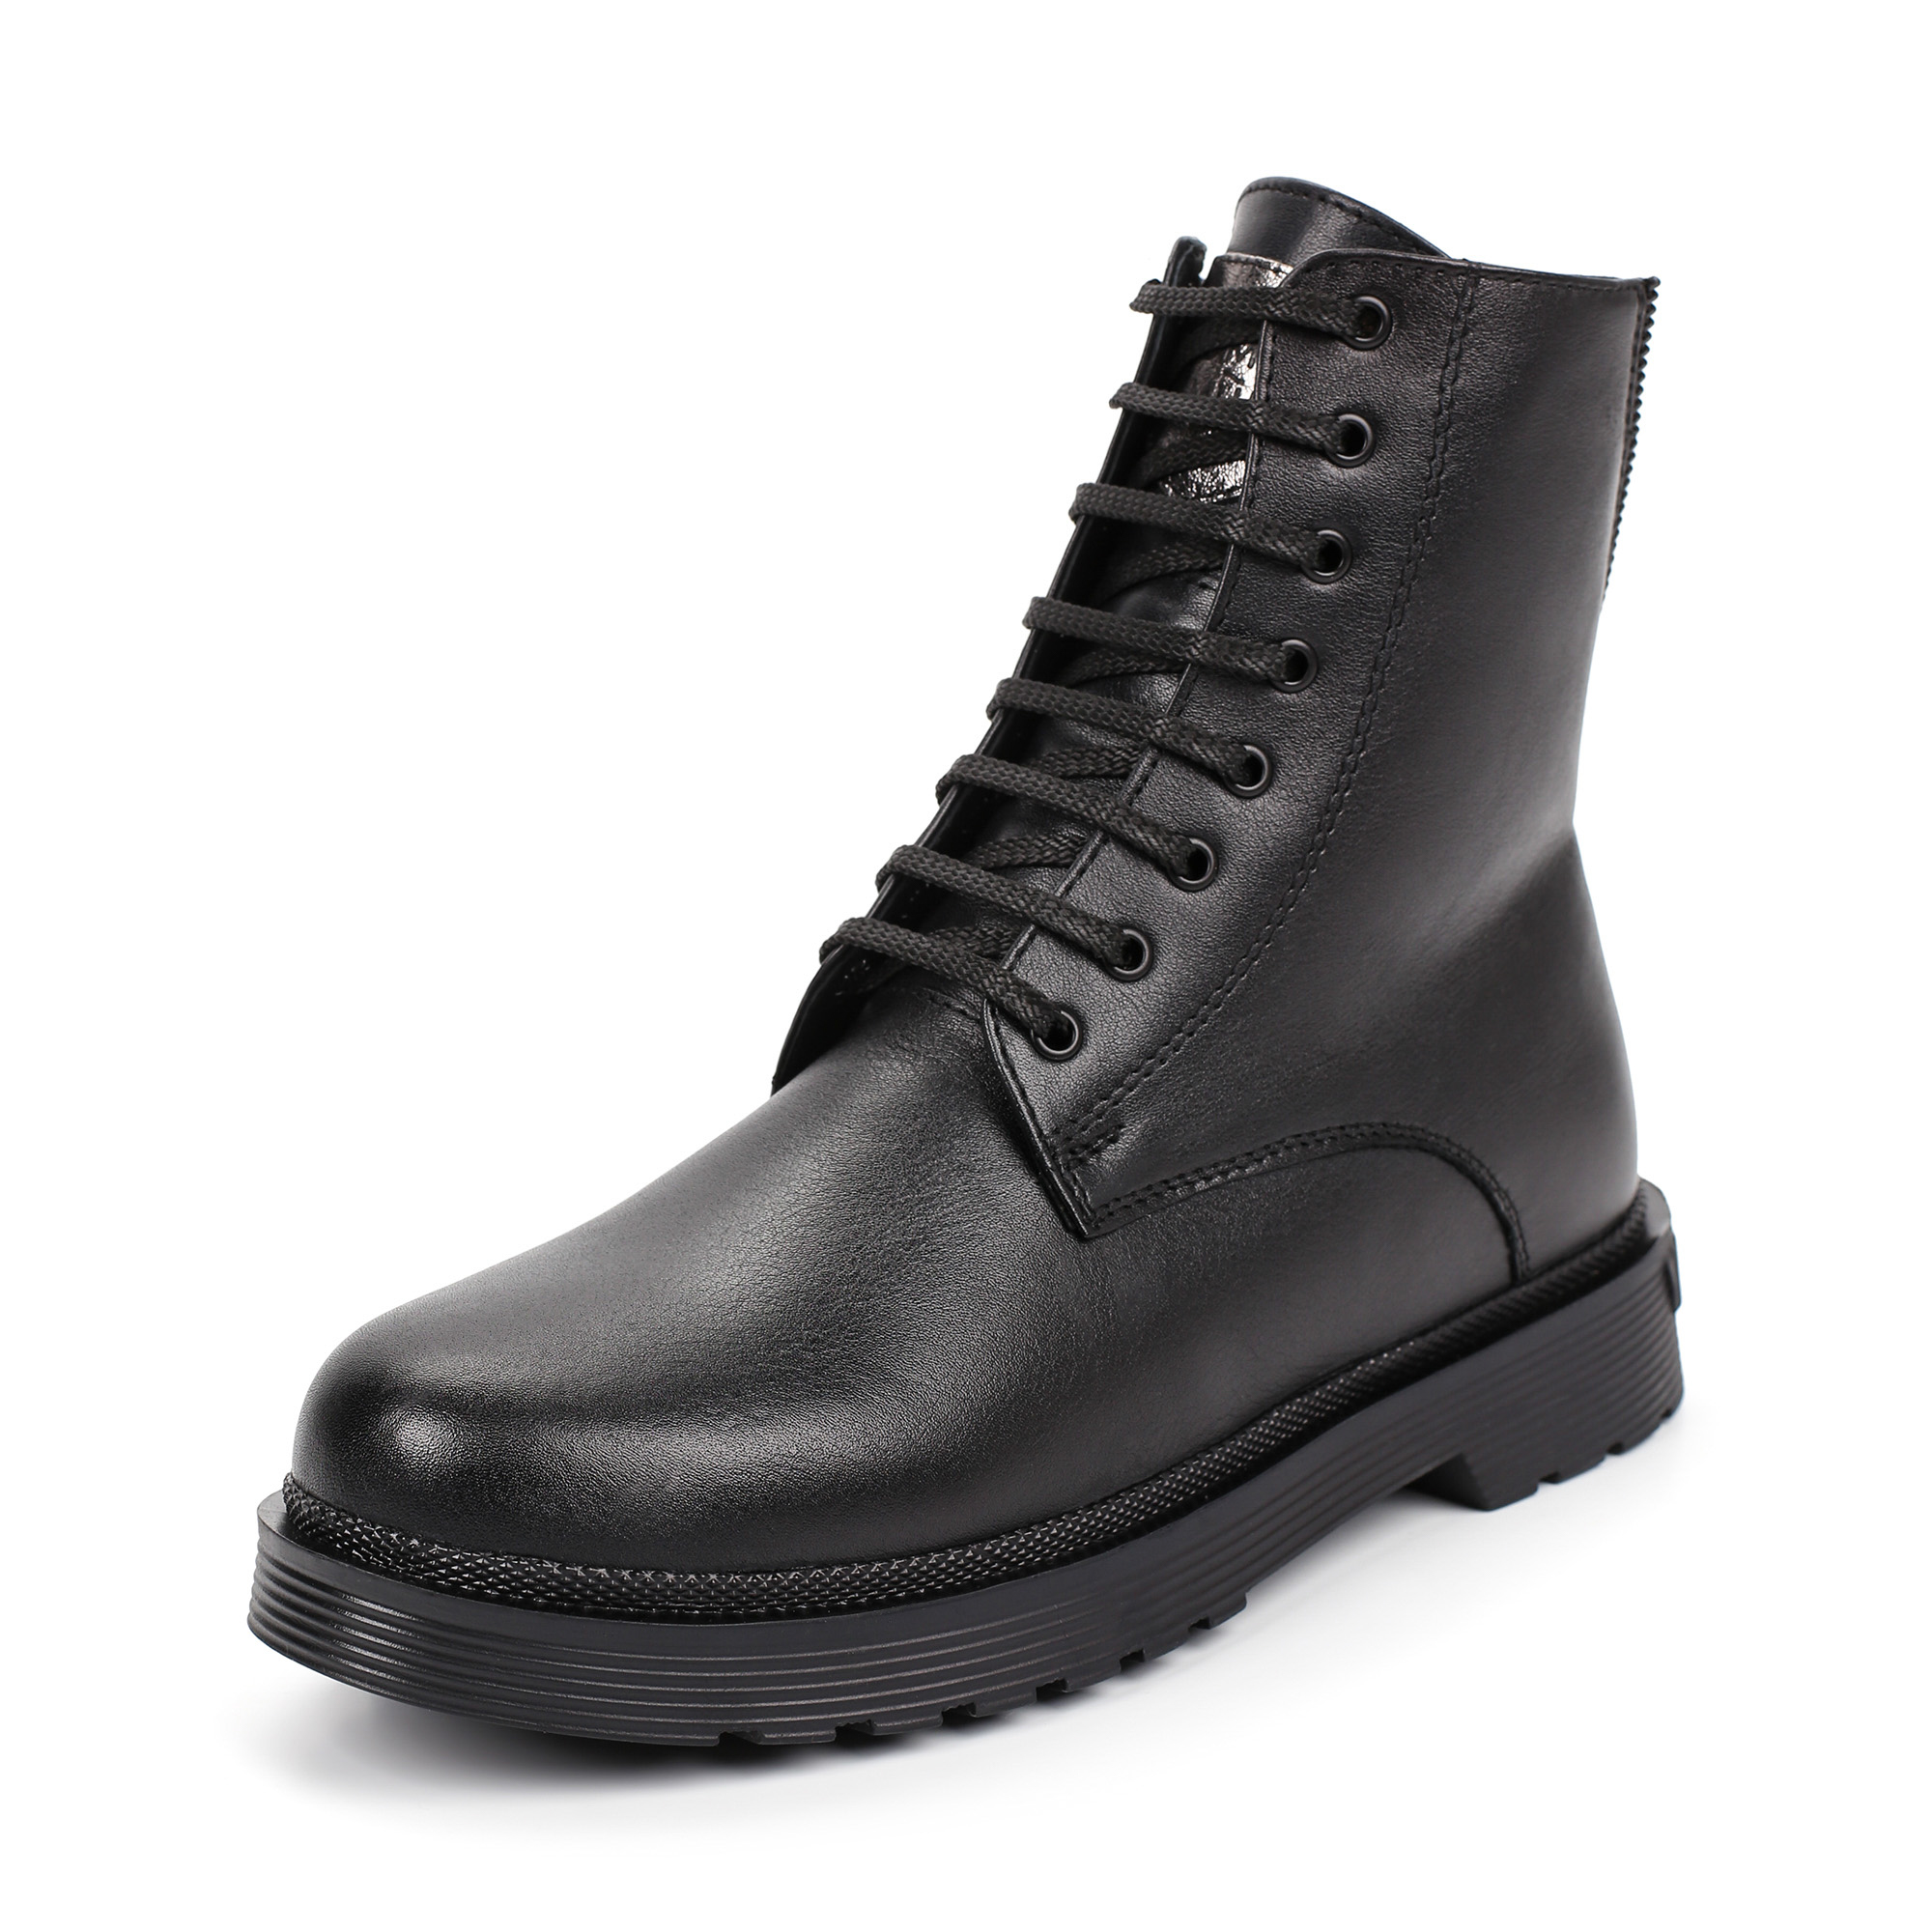 Ботинки Thomas Munz 302-004A-5102, цвет черный, размер 39 - фото 2